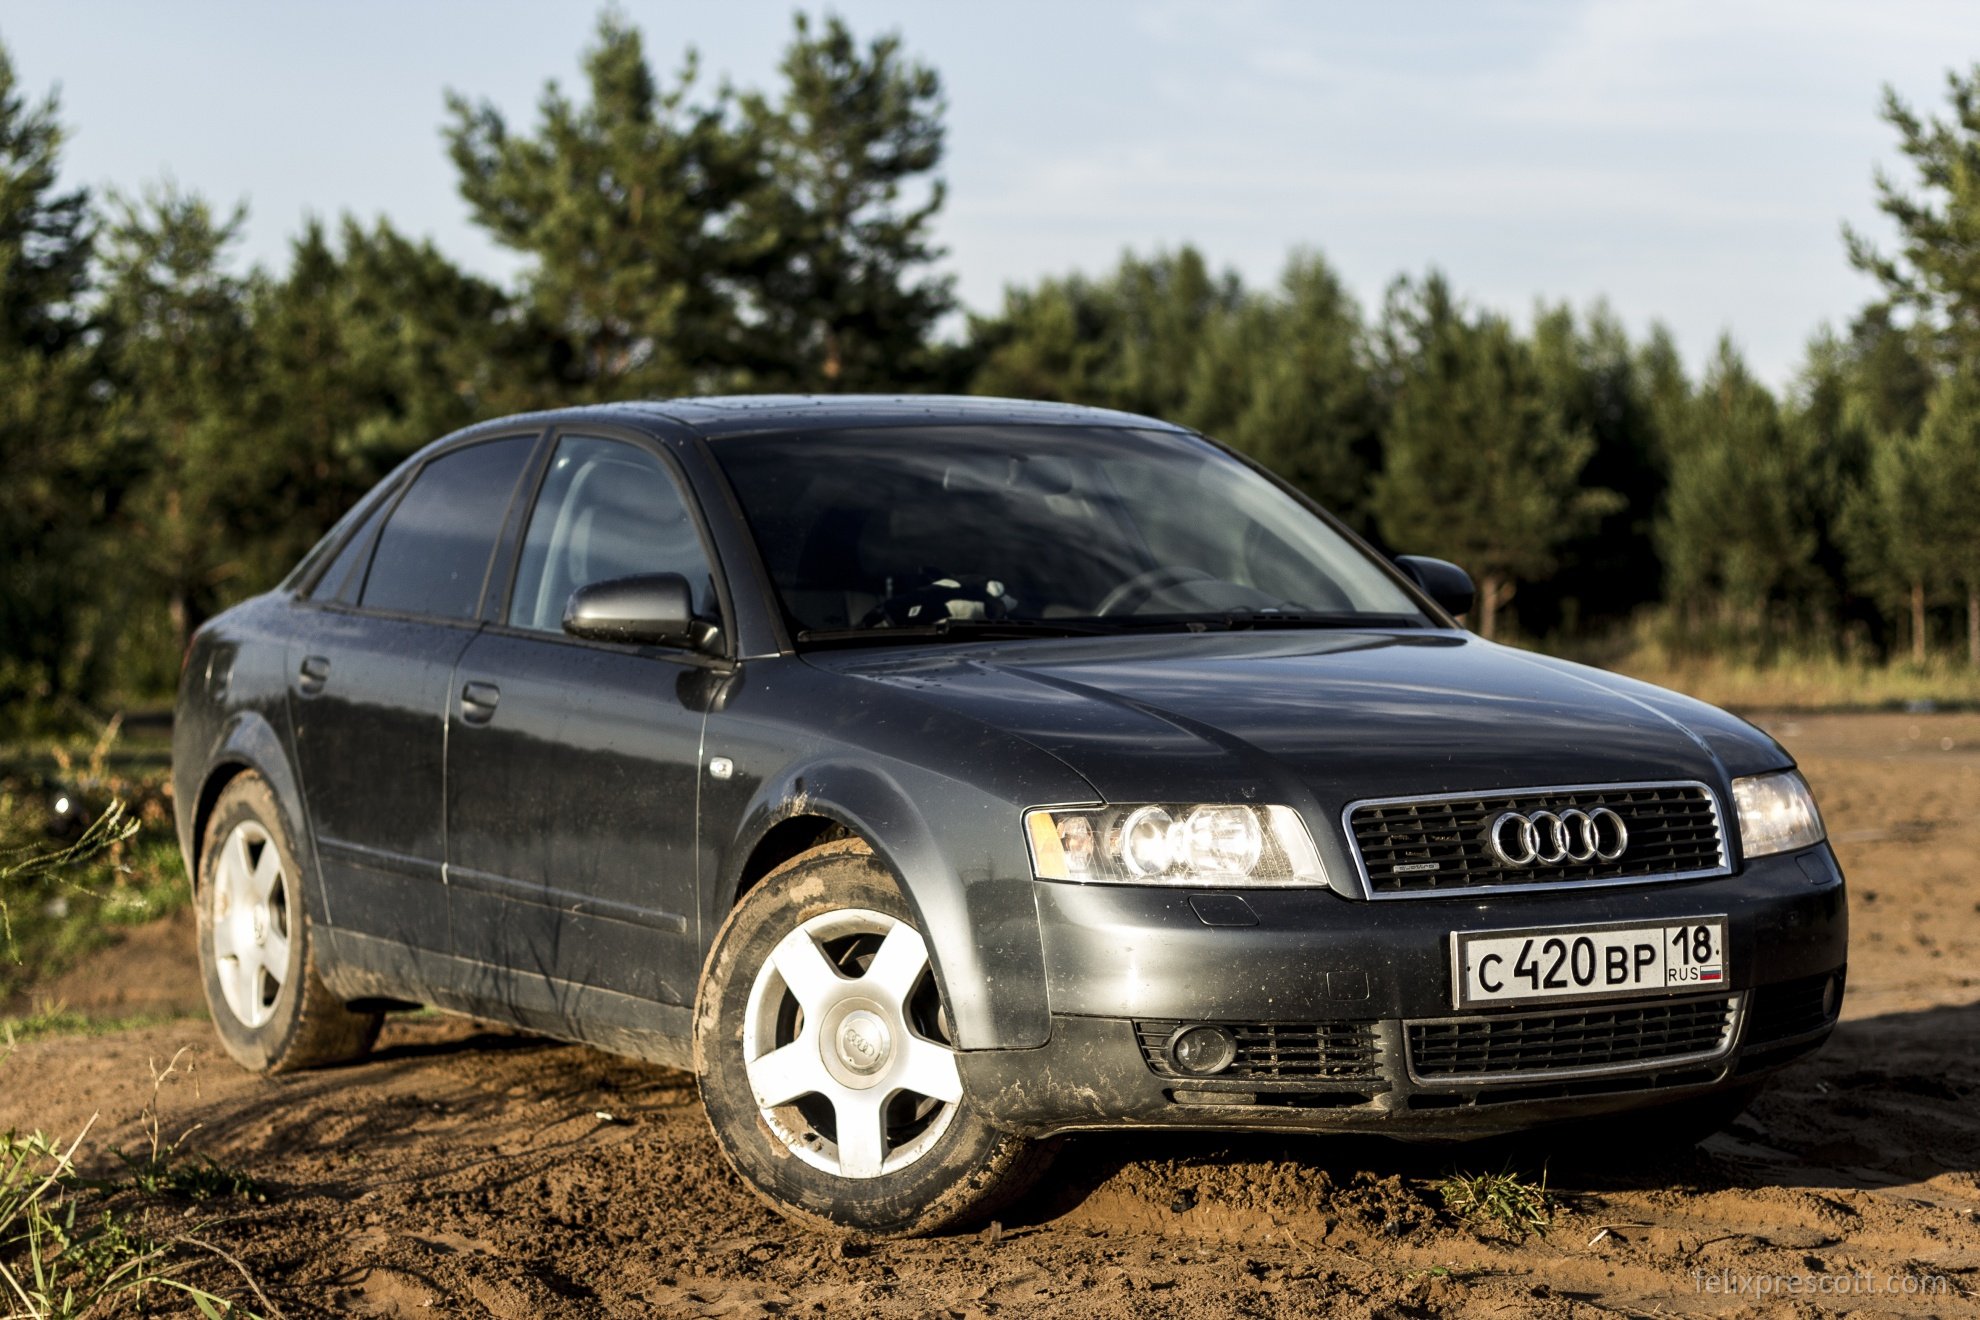 Ауди 4 2001 год. Audi a4 b6 2002. Audi a4 b6 2003. Ауди а4 б6 2001. Audi a4 b6 2001.